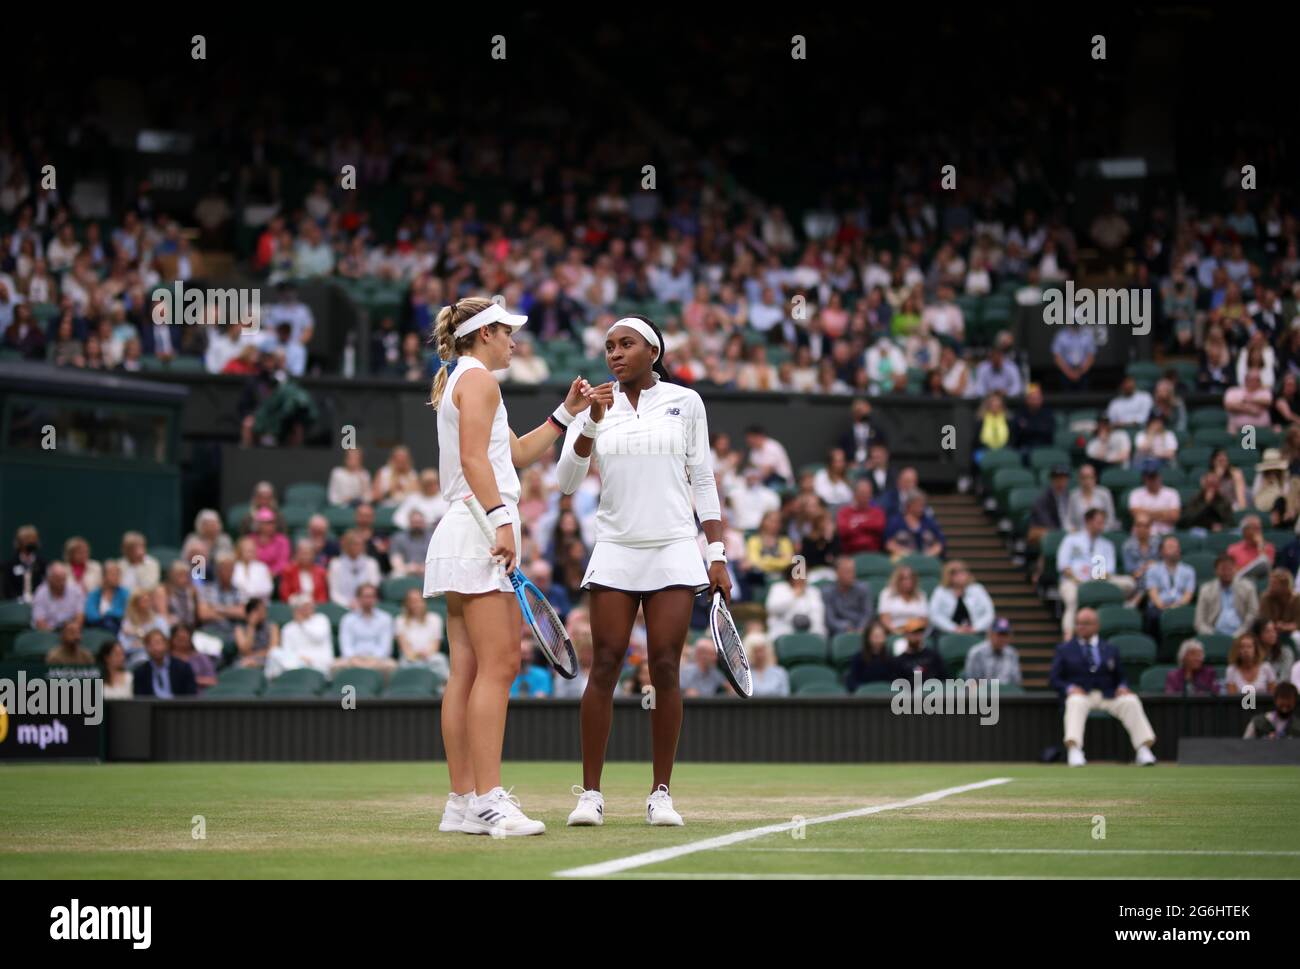 Coco Gauff (rechts) und Caty McNally während ihres Doppelmatches der Damen in der dritten Runde gegen Veronika Kudermetova und Elena Vesnina am achten Tag von Wimbledon im All England Lawn Tennis and Croquet Club in Wimbledon. Bilddatum: Dienstag, 6. Juli 2021. Stockfoto